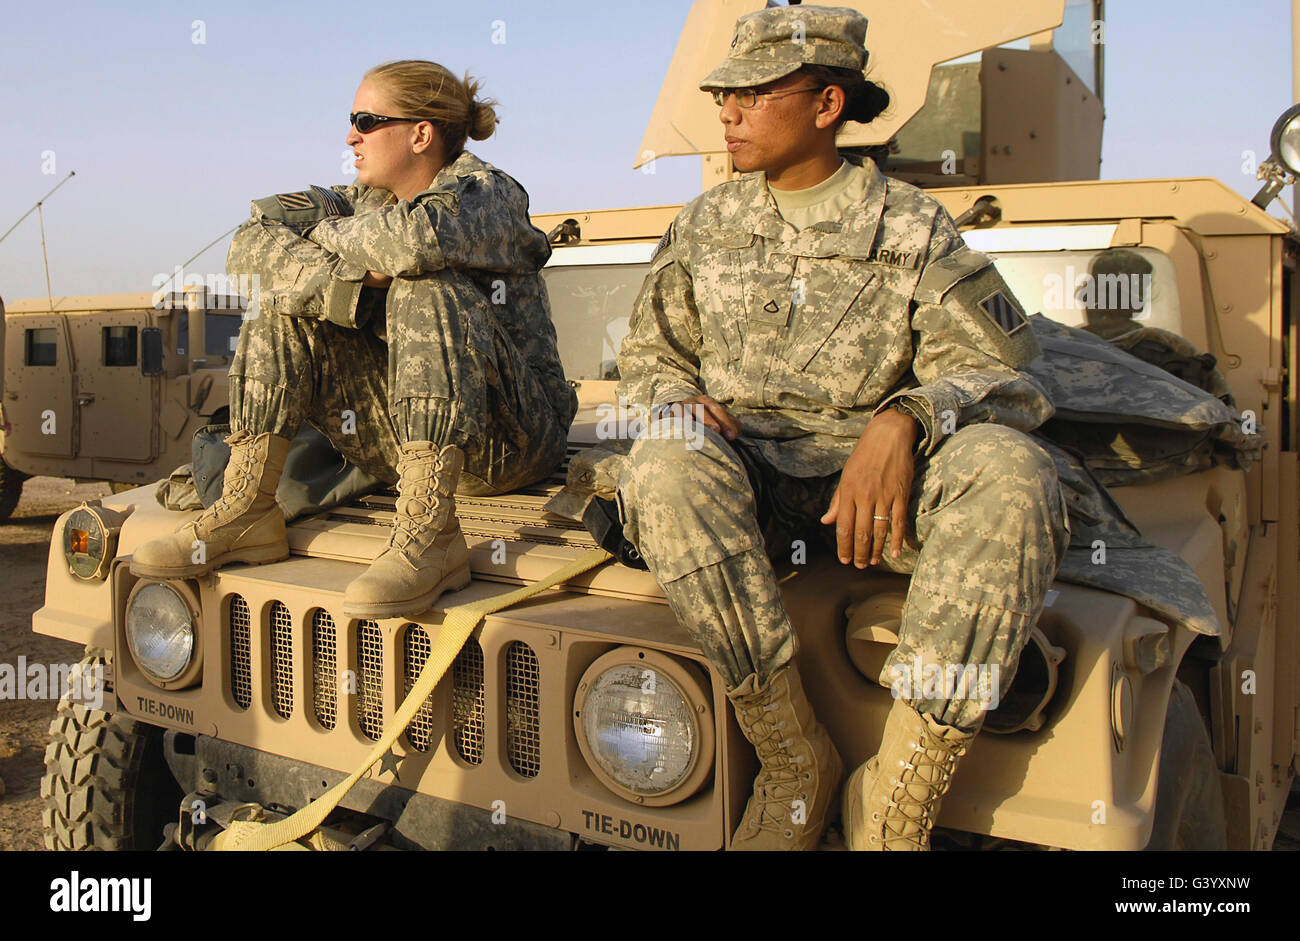 Zwei Soldaten der US Army entspannen vor der Abreise auf einer Mission. Stockfoto